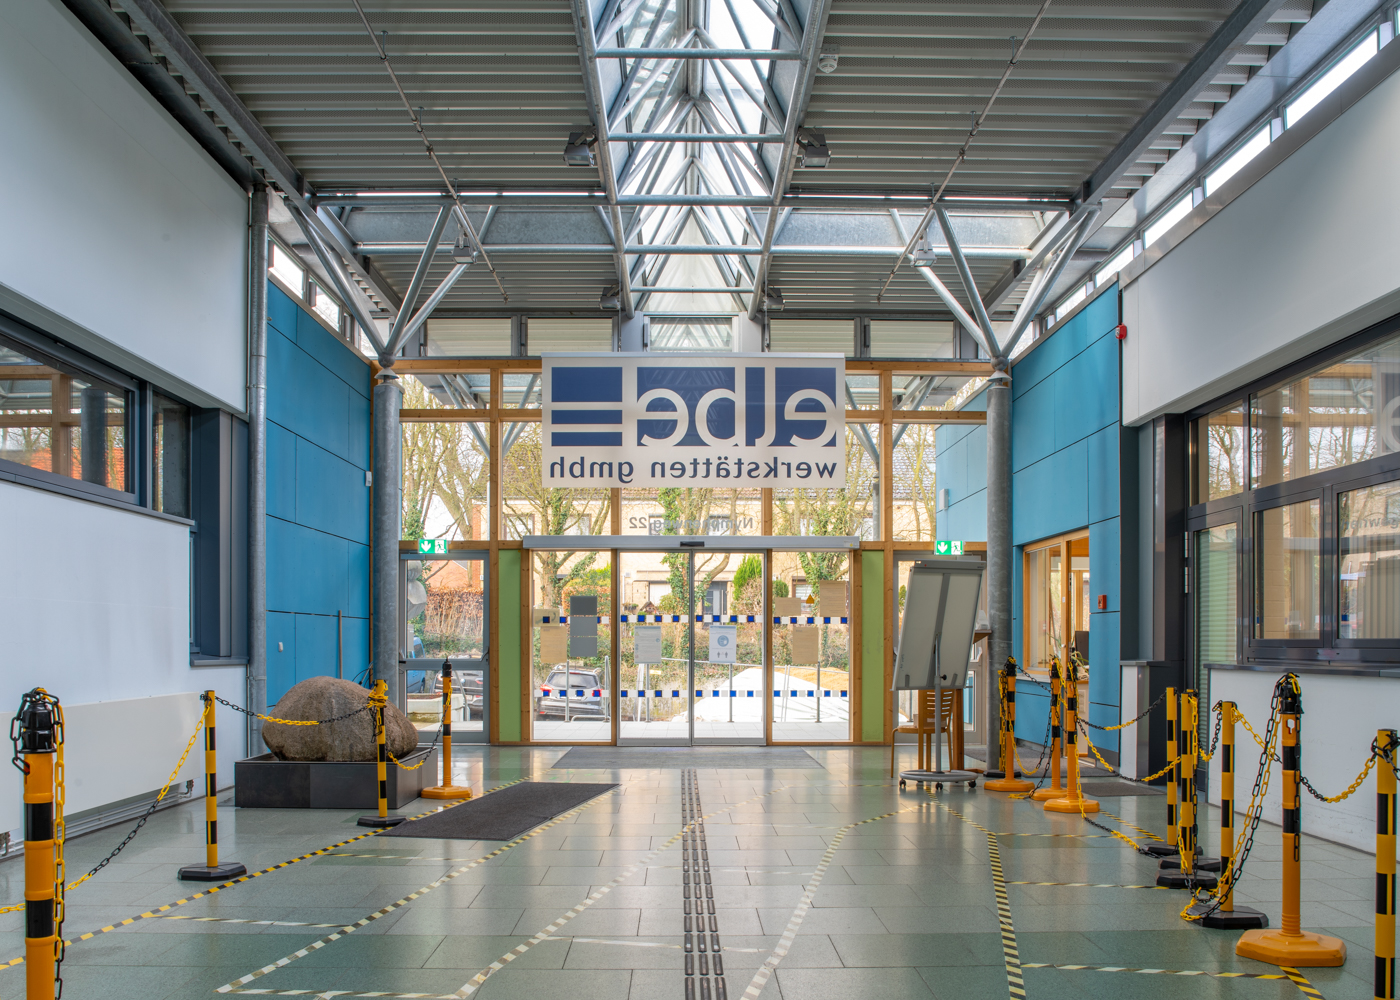 Eingangsbereich der Elbe-Werkstätten in Hamburg, Betriebstätte für Menschen mit Behinderung, Branadschutzsanierung